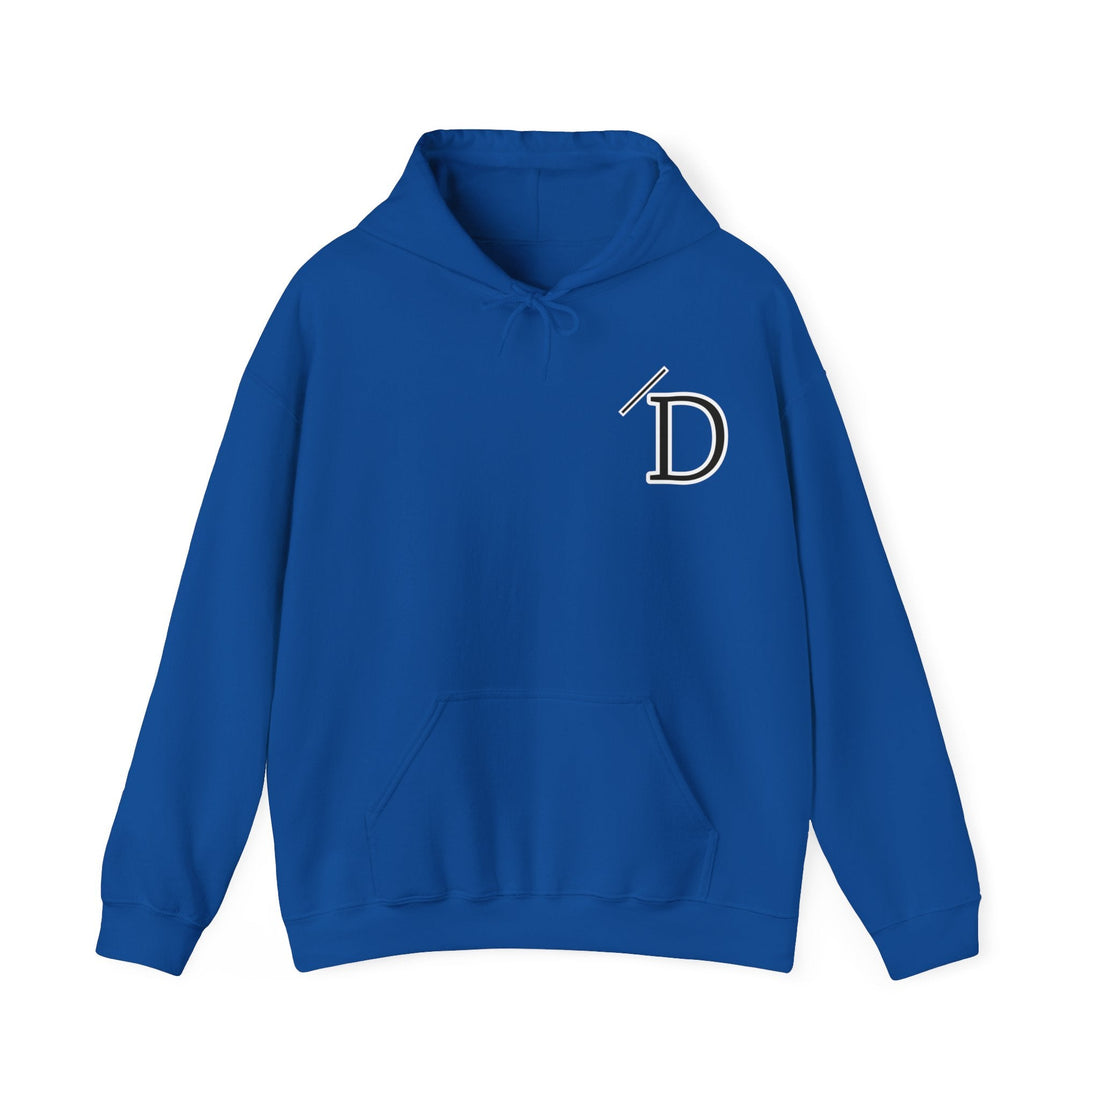 Custom Design for "D" - Hoodie - Positively Sassy - Custom Design for "D"